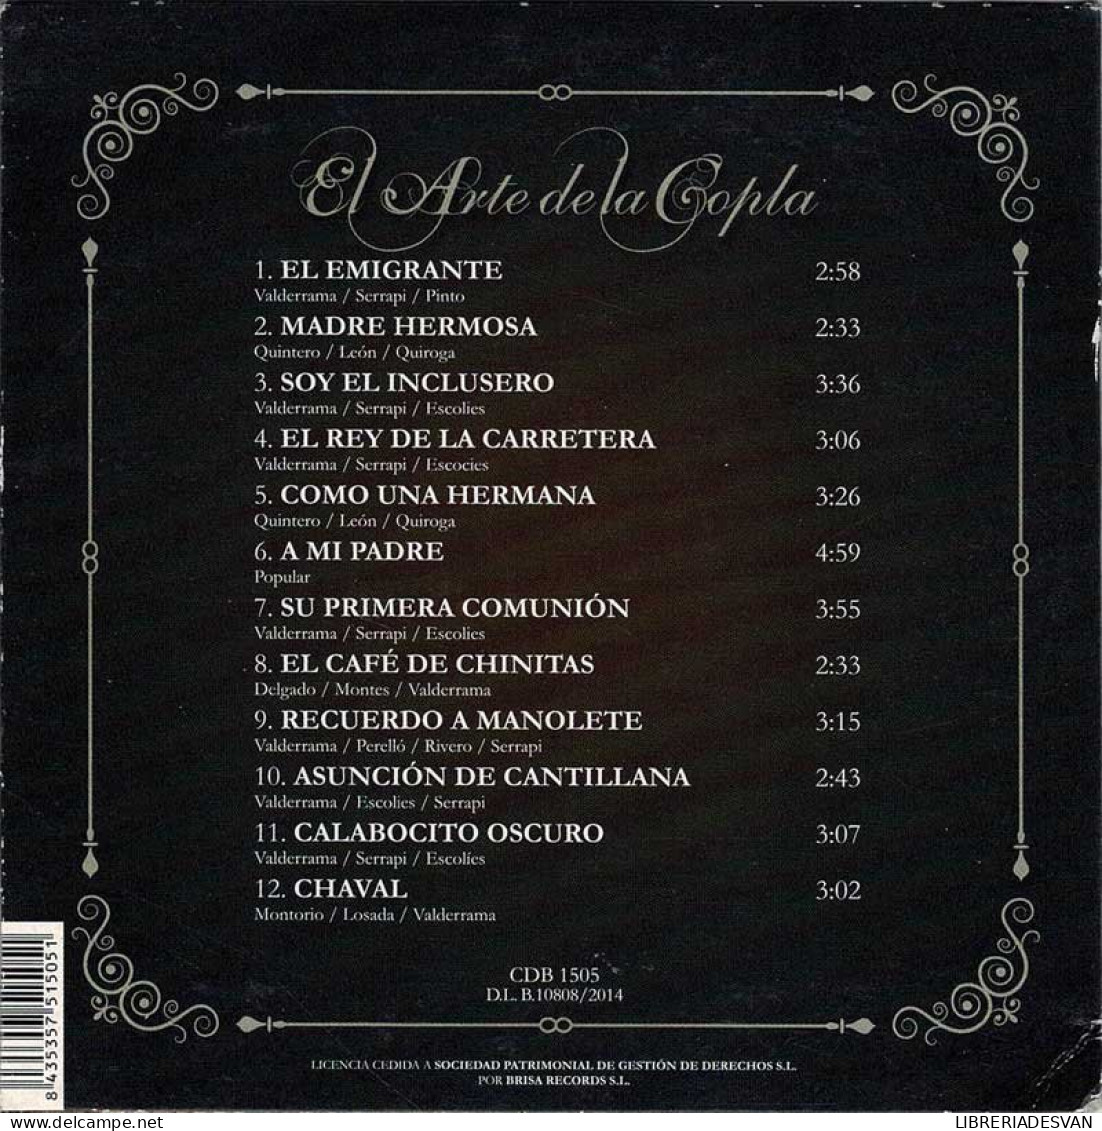 El Arte De La Copla. Juanito Valderrama. CD - Sonstige - Spanische Musik